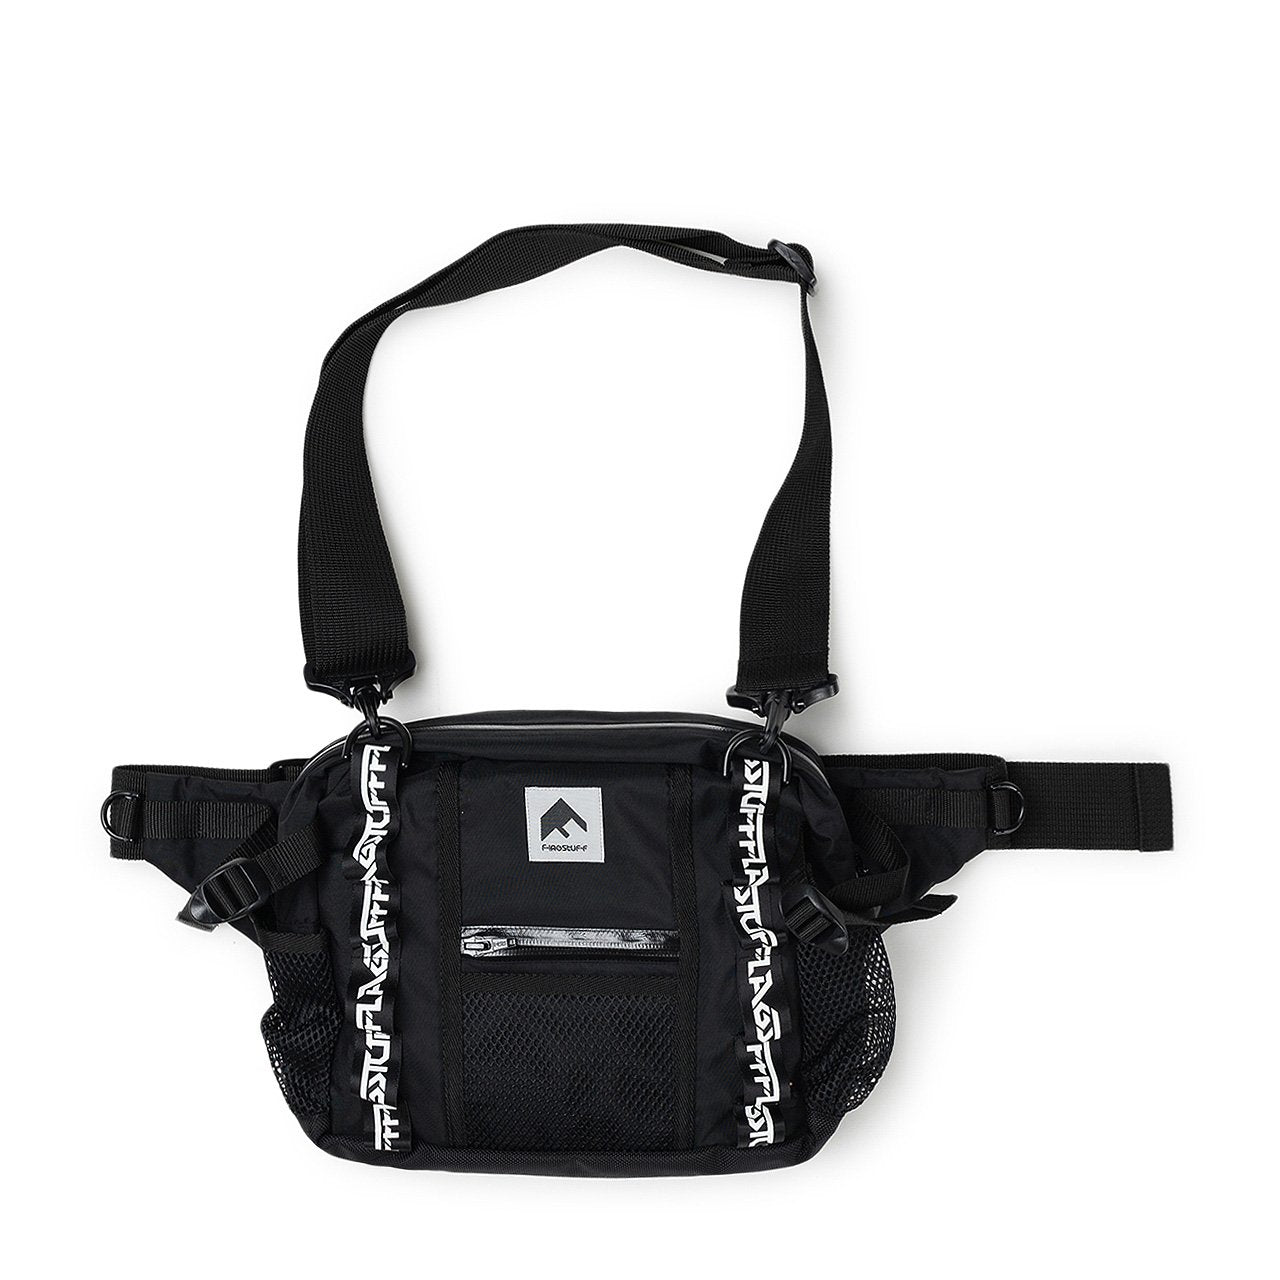 flagstuff body bag (black) - 19ss-fs-70-blk - a.plus - Image - 3